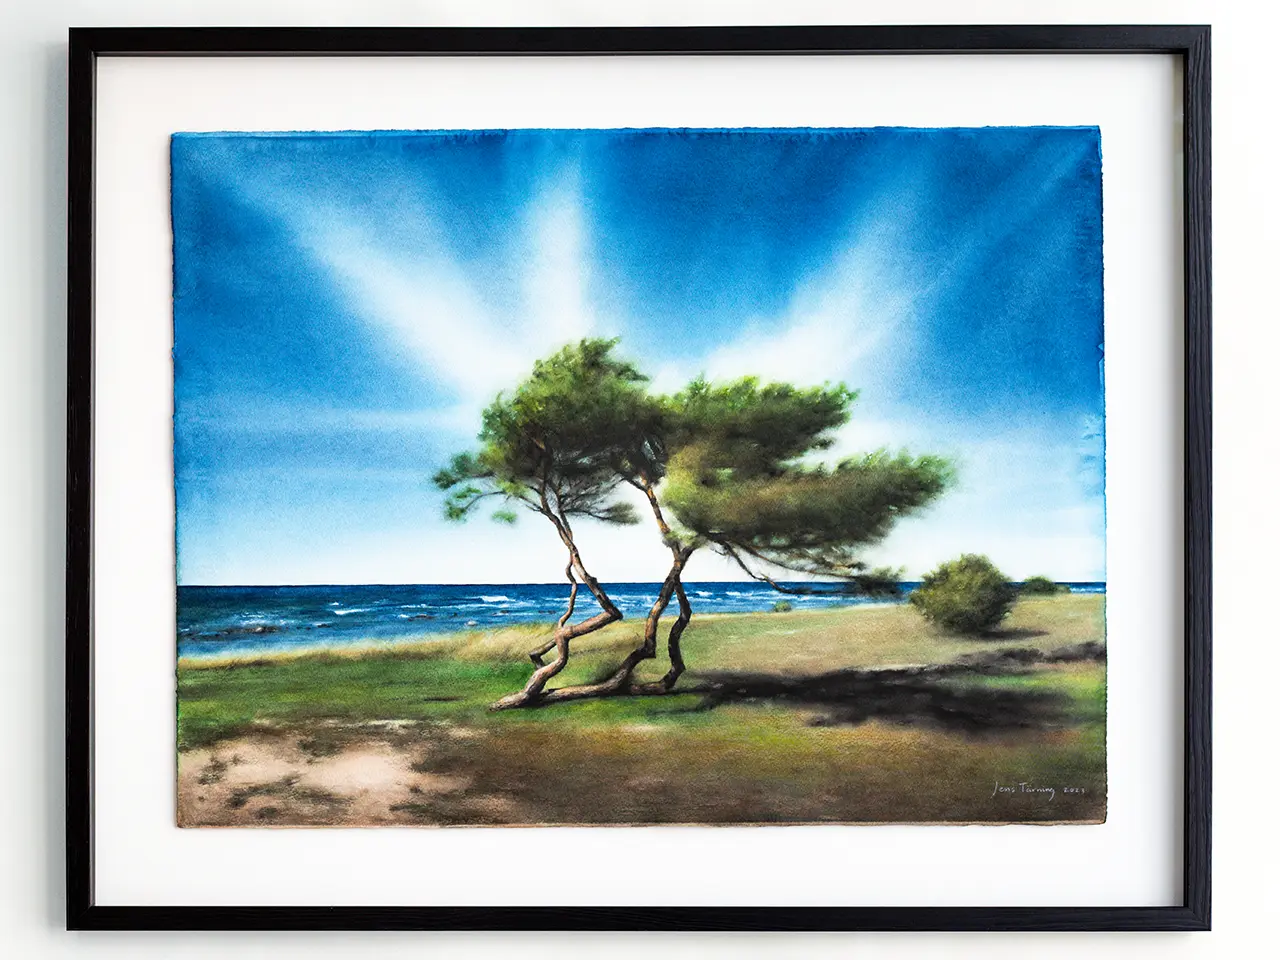 Inramad tavla av ett träd och en strand på Gotland målade i akvarell